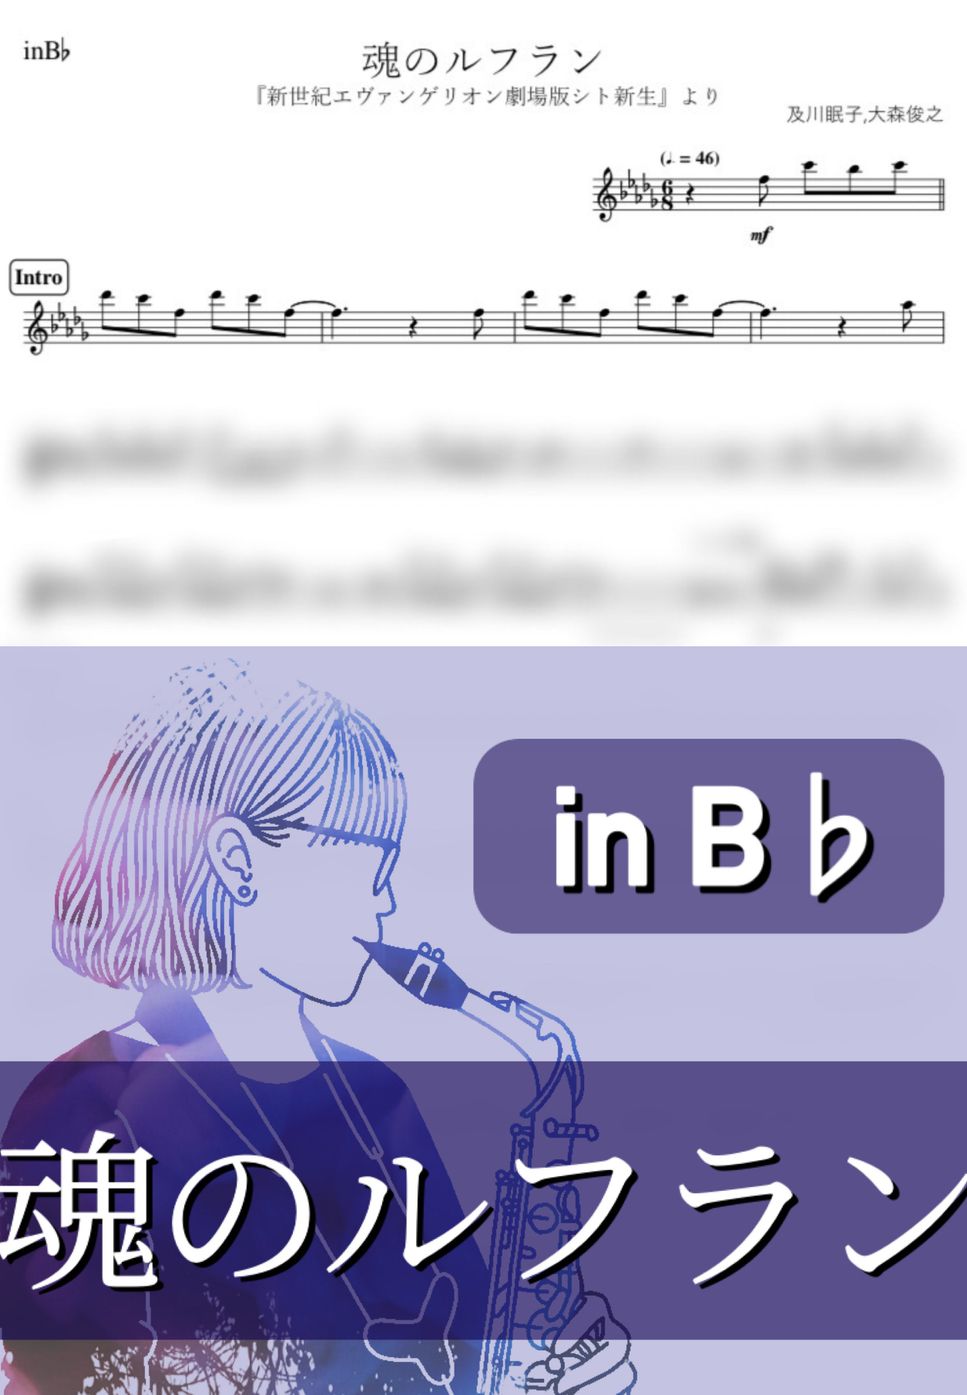 新世紀エヴァンゲリオン - 魂のルフラン (B♭) by kanamusic